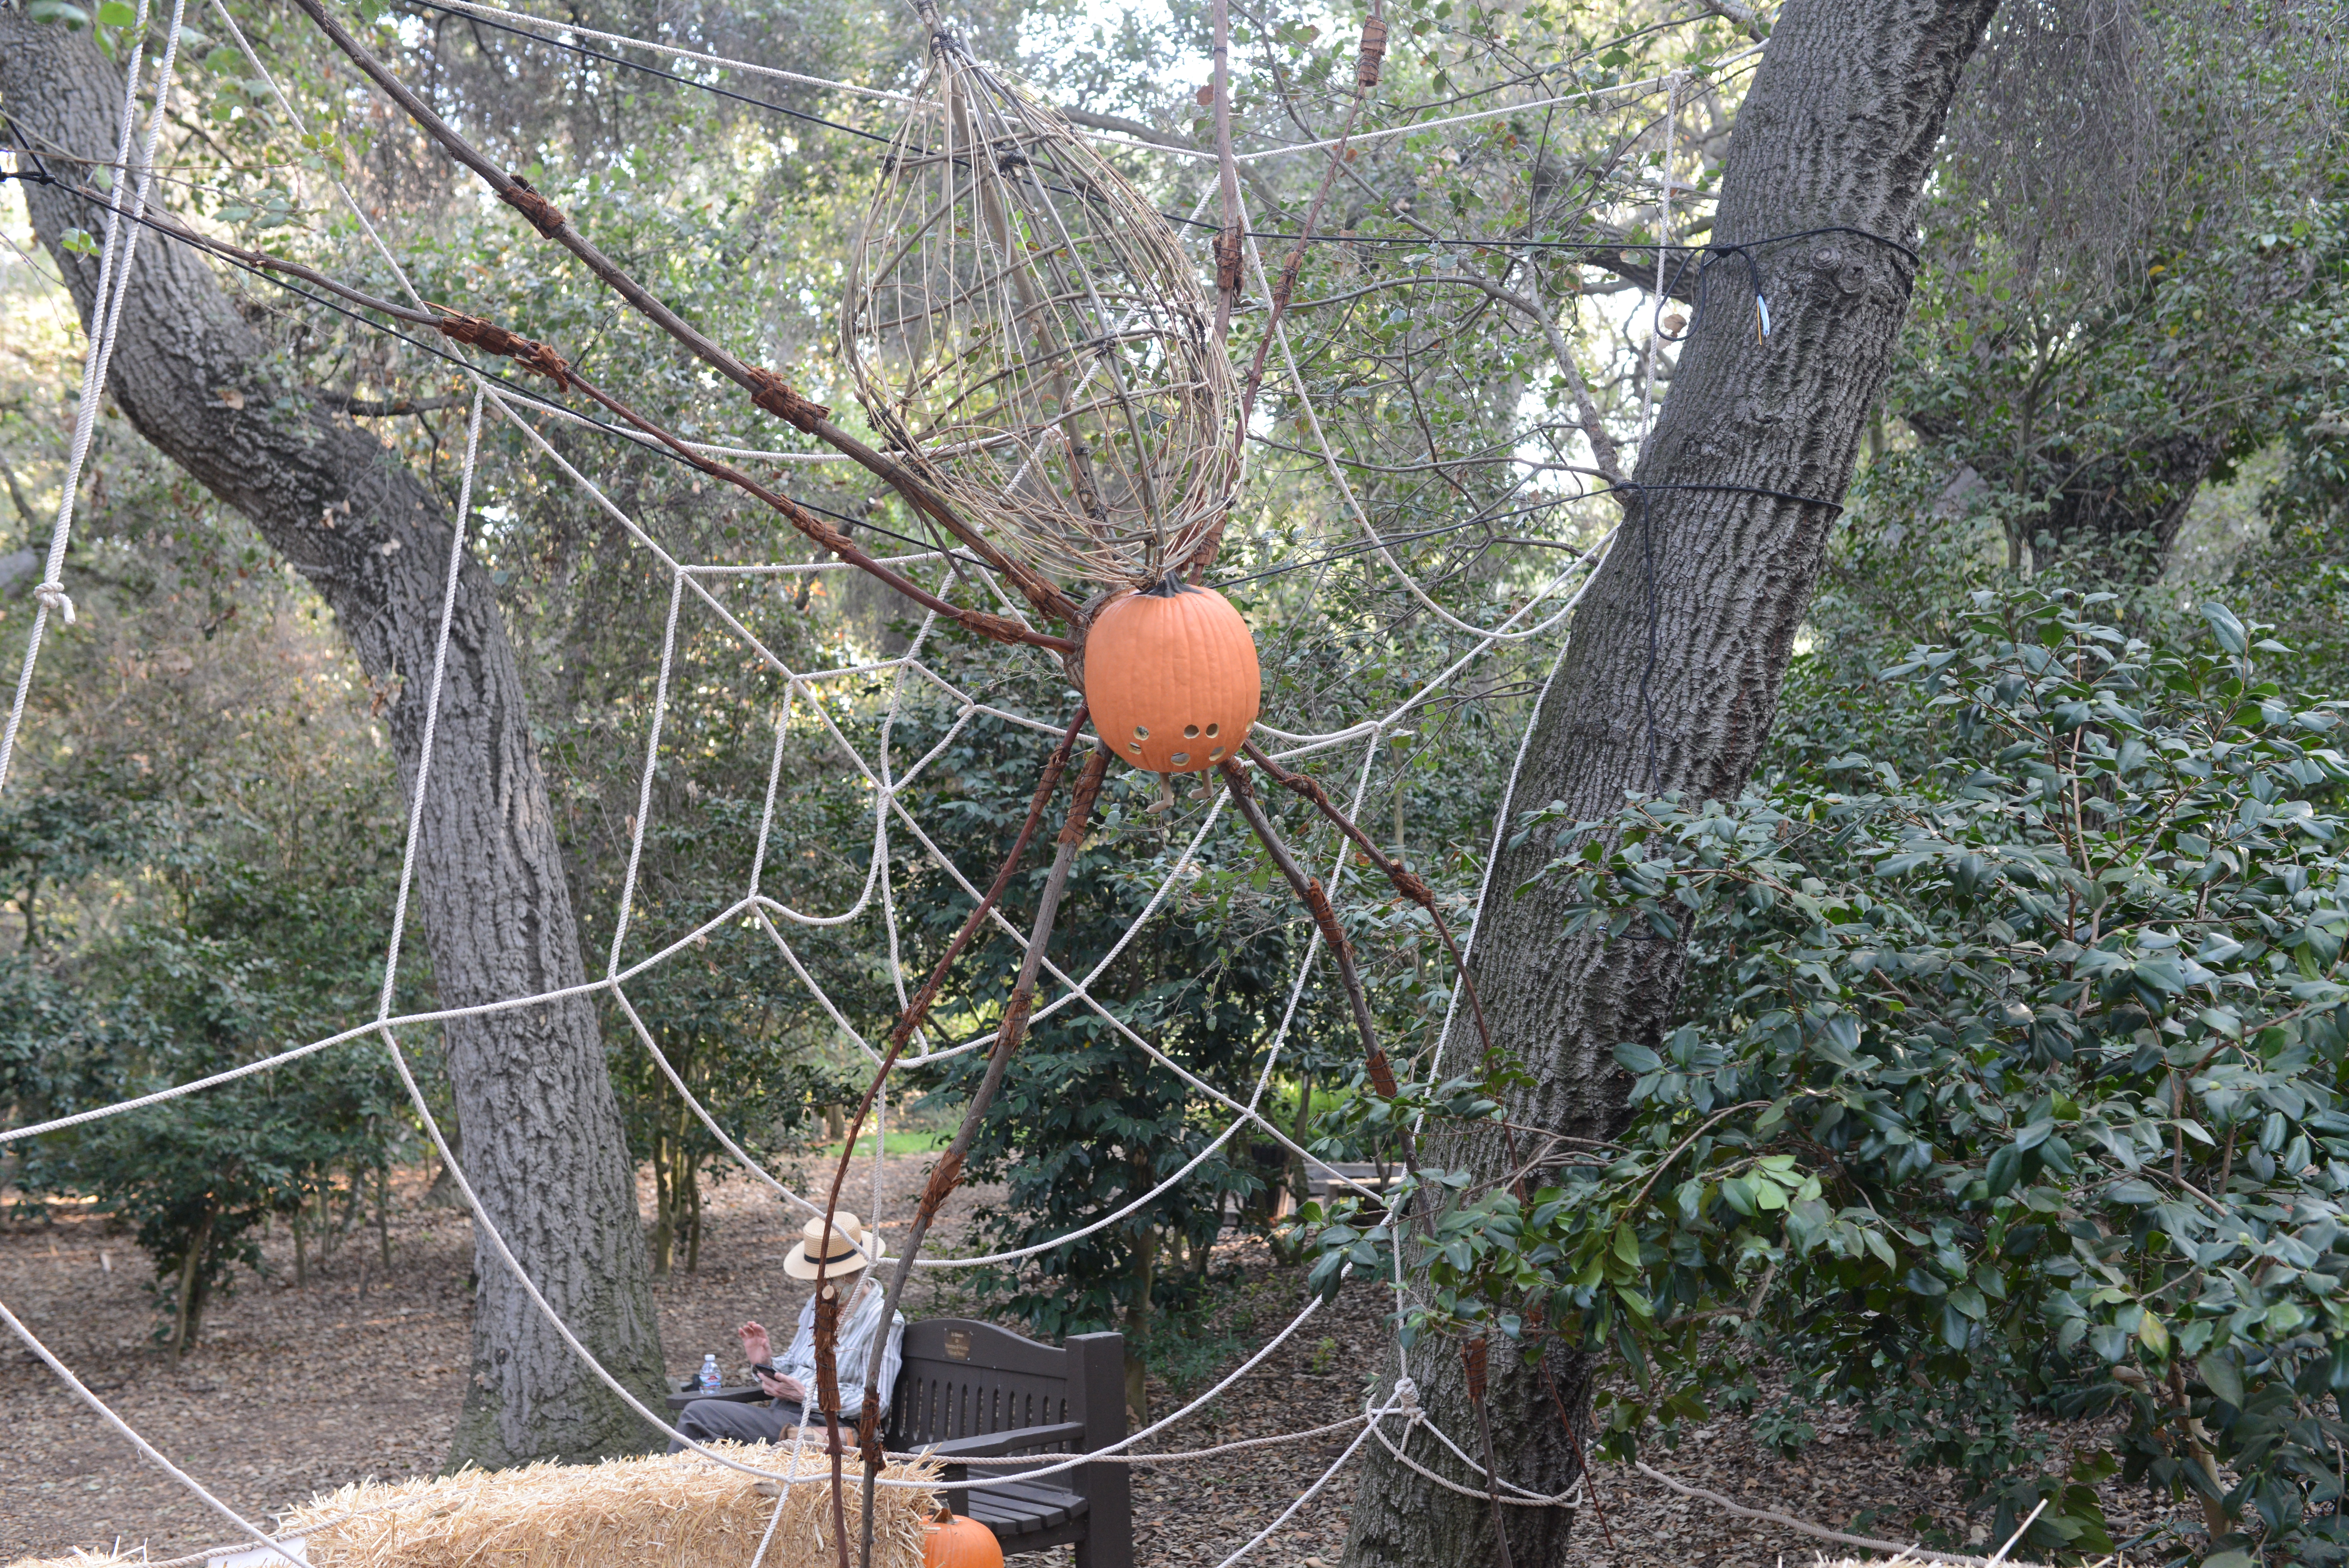 Spider from pumpkin art - Descanso Gardens